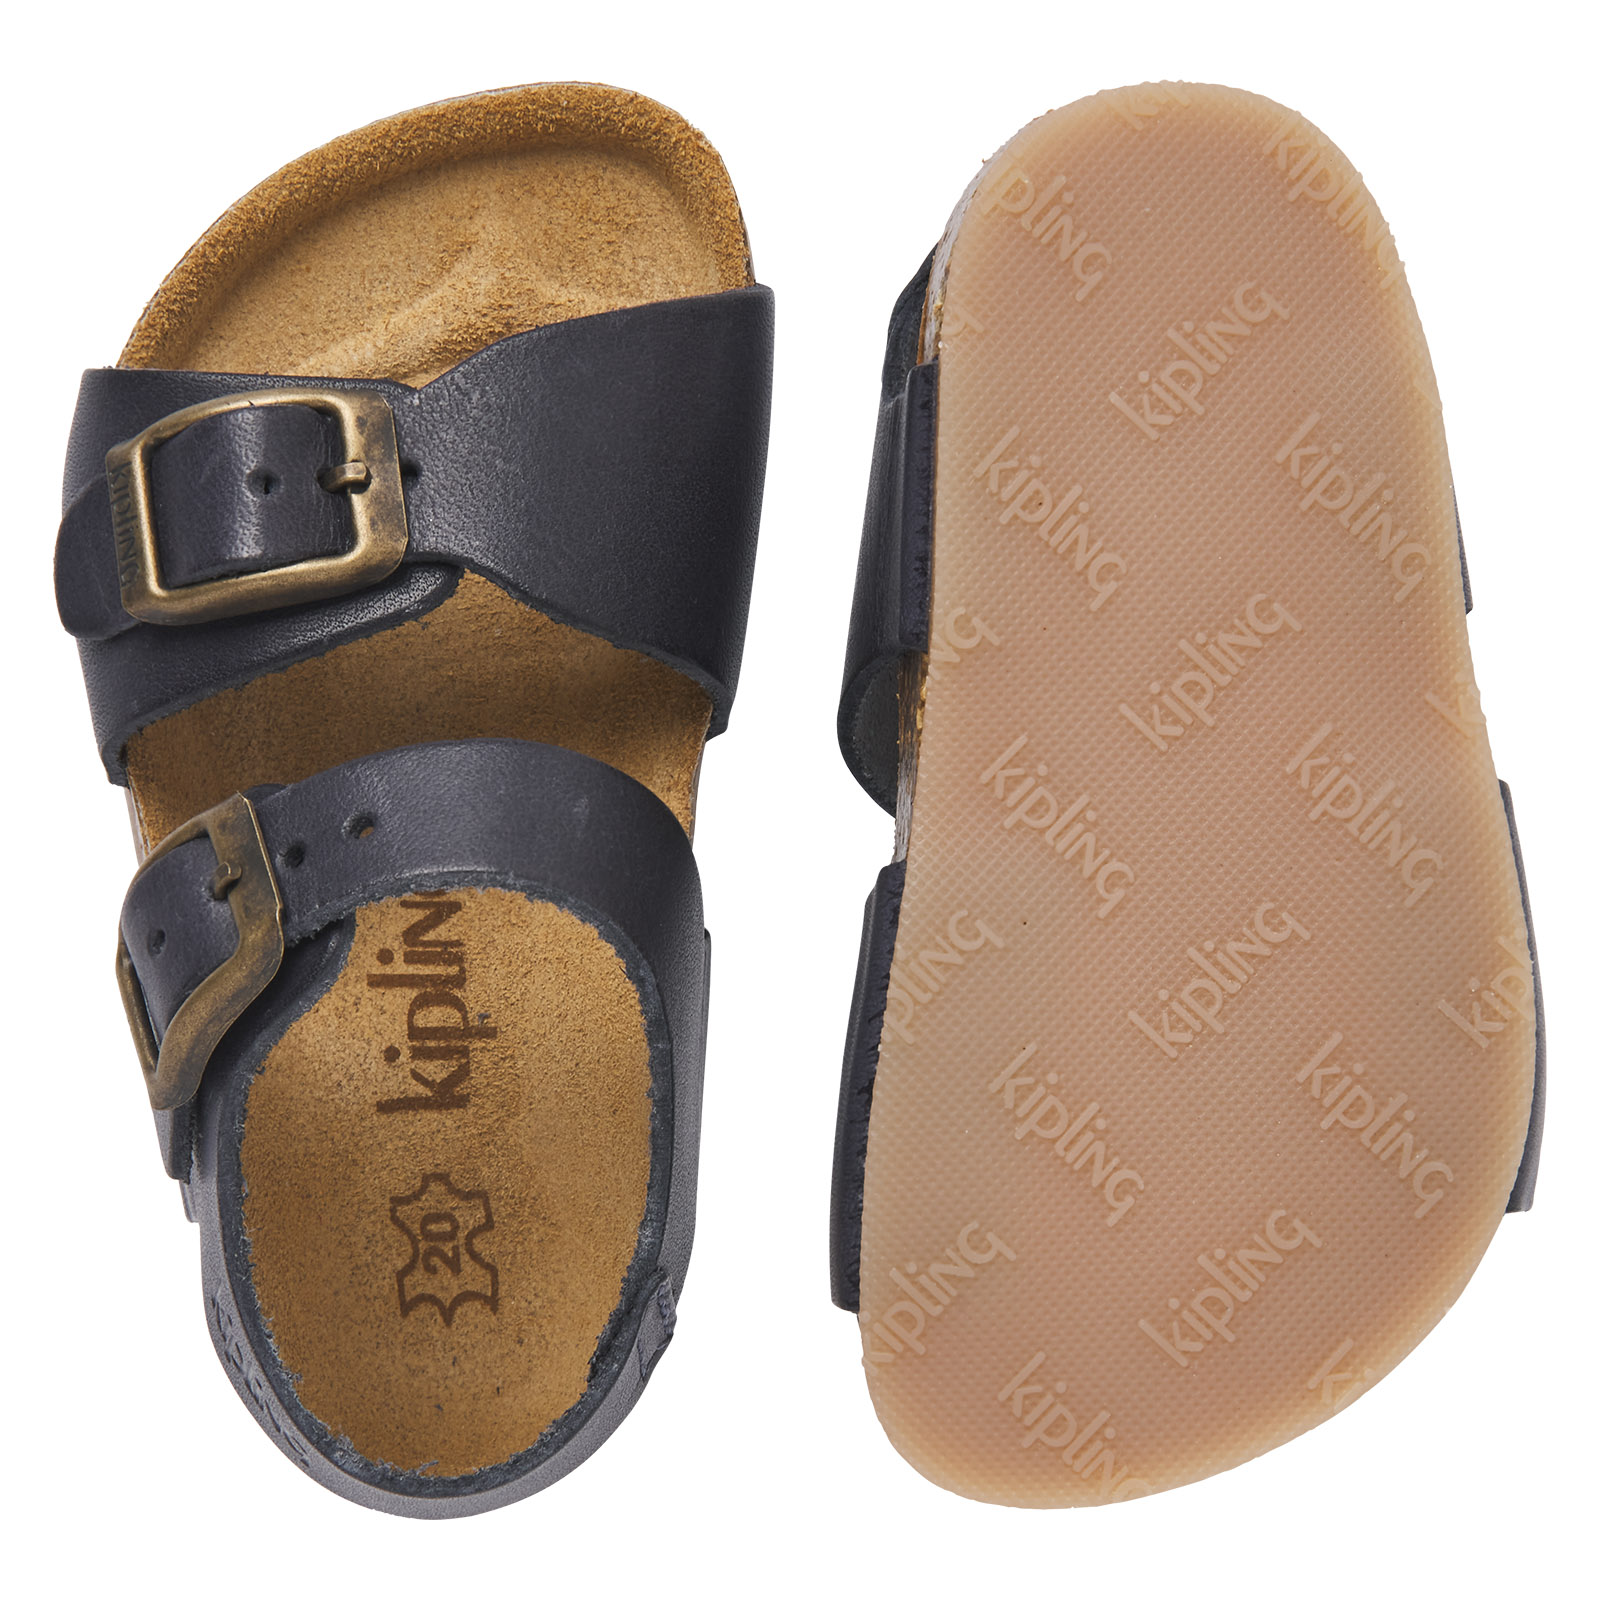 Traditie postkantoor identificatie Breed aanbod stoere sandalen jongens | Kipling schoenen